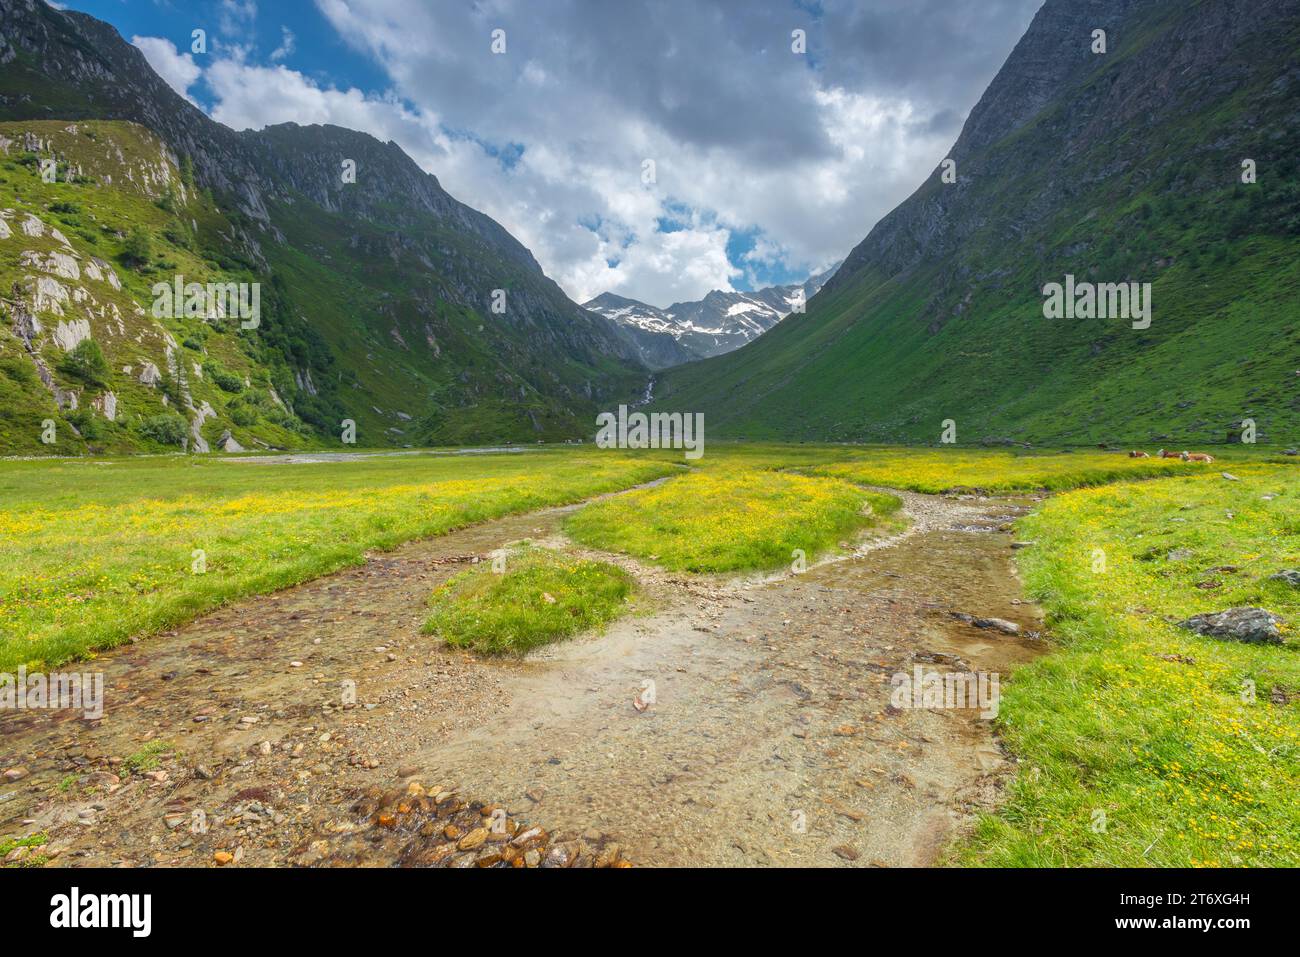 Valle profonda scavata dal ghiacciaio nelle Alpi Aurine d'Italia. Prato estivo con fiori gialli, pascolo alpino con piccolo ruscello di montagna. Foto Stock